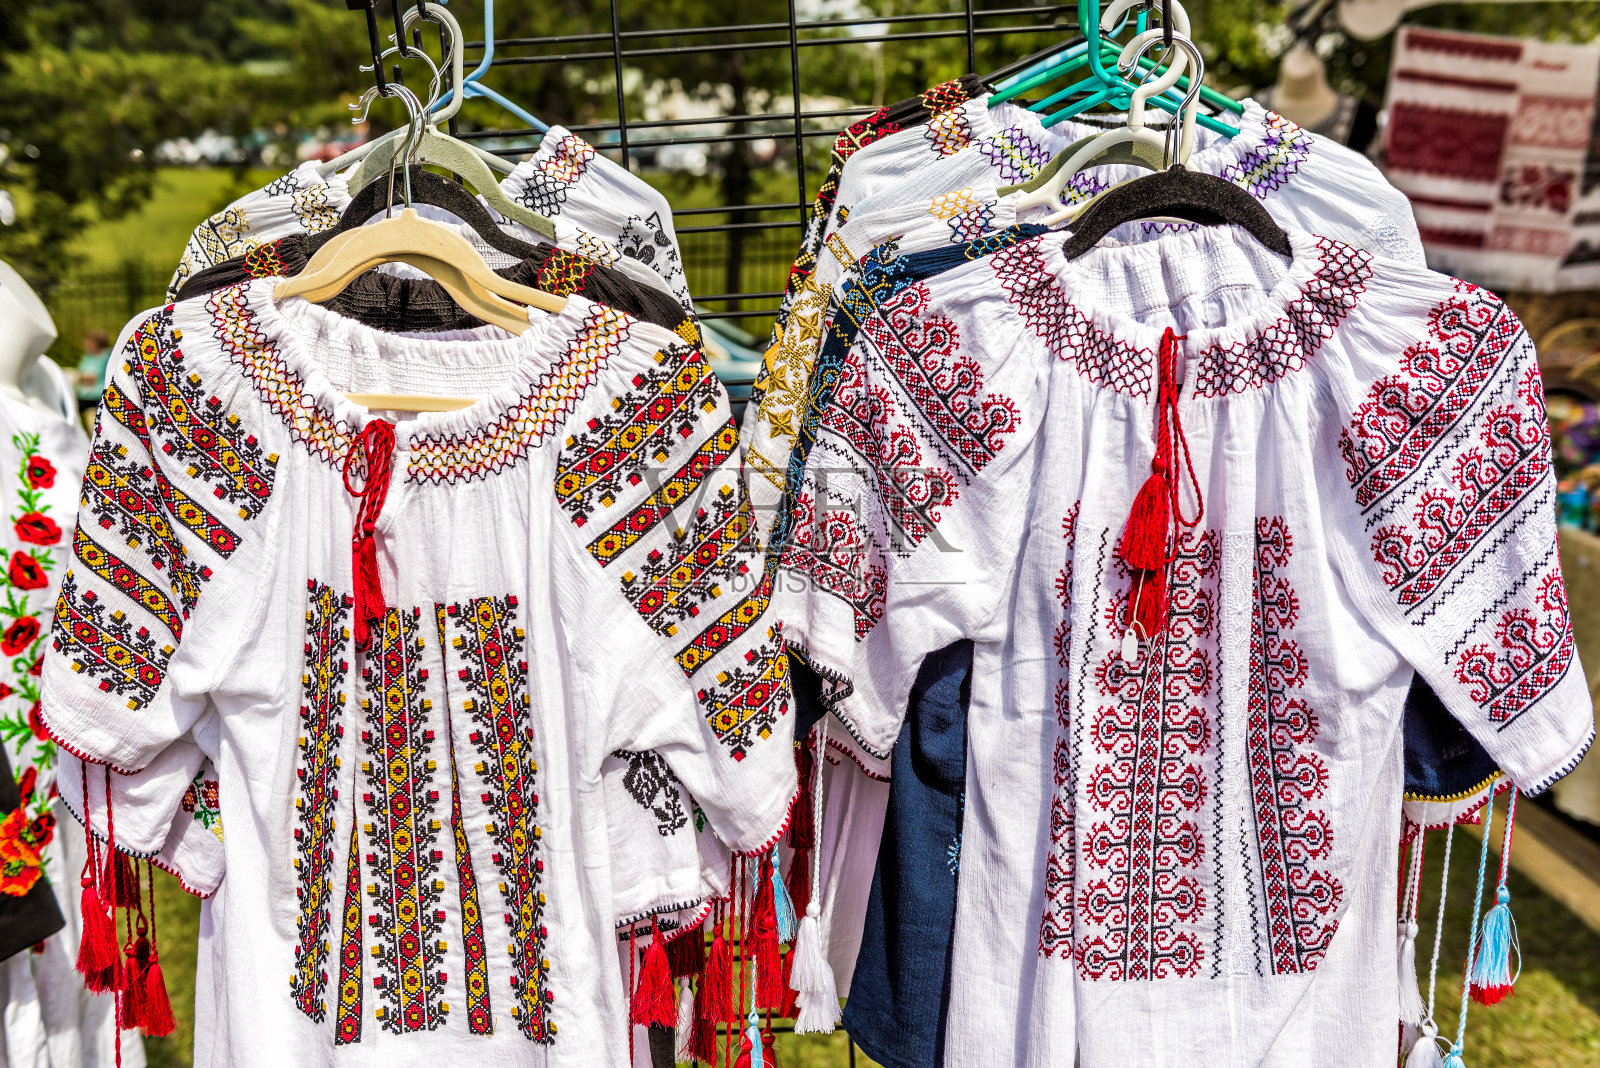 户外跳蚤市场展示乌克兰斯拉夫妇女的刺绣传统衬衫刺绣服装照片摄影图片